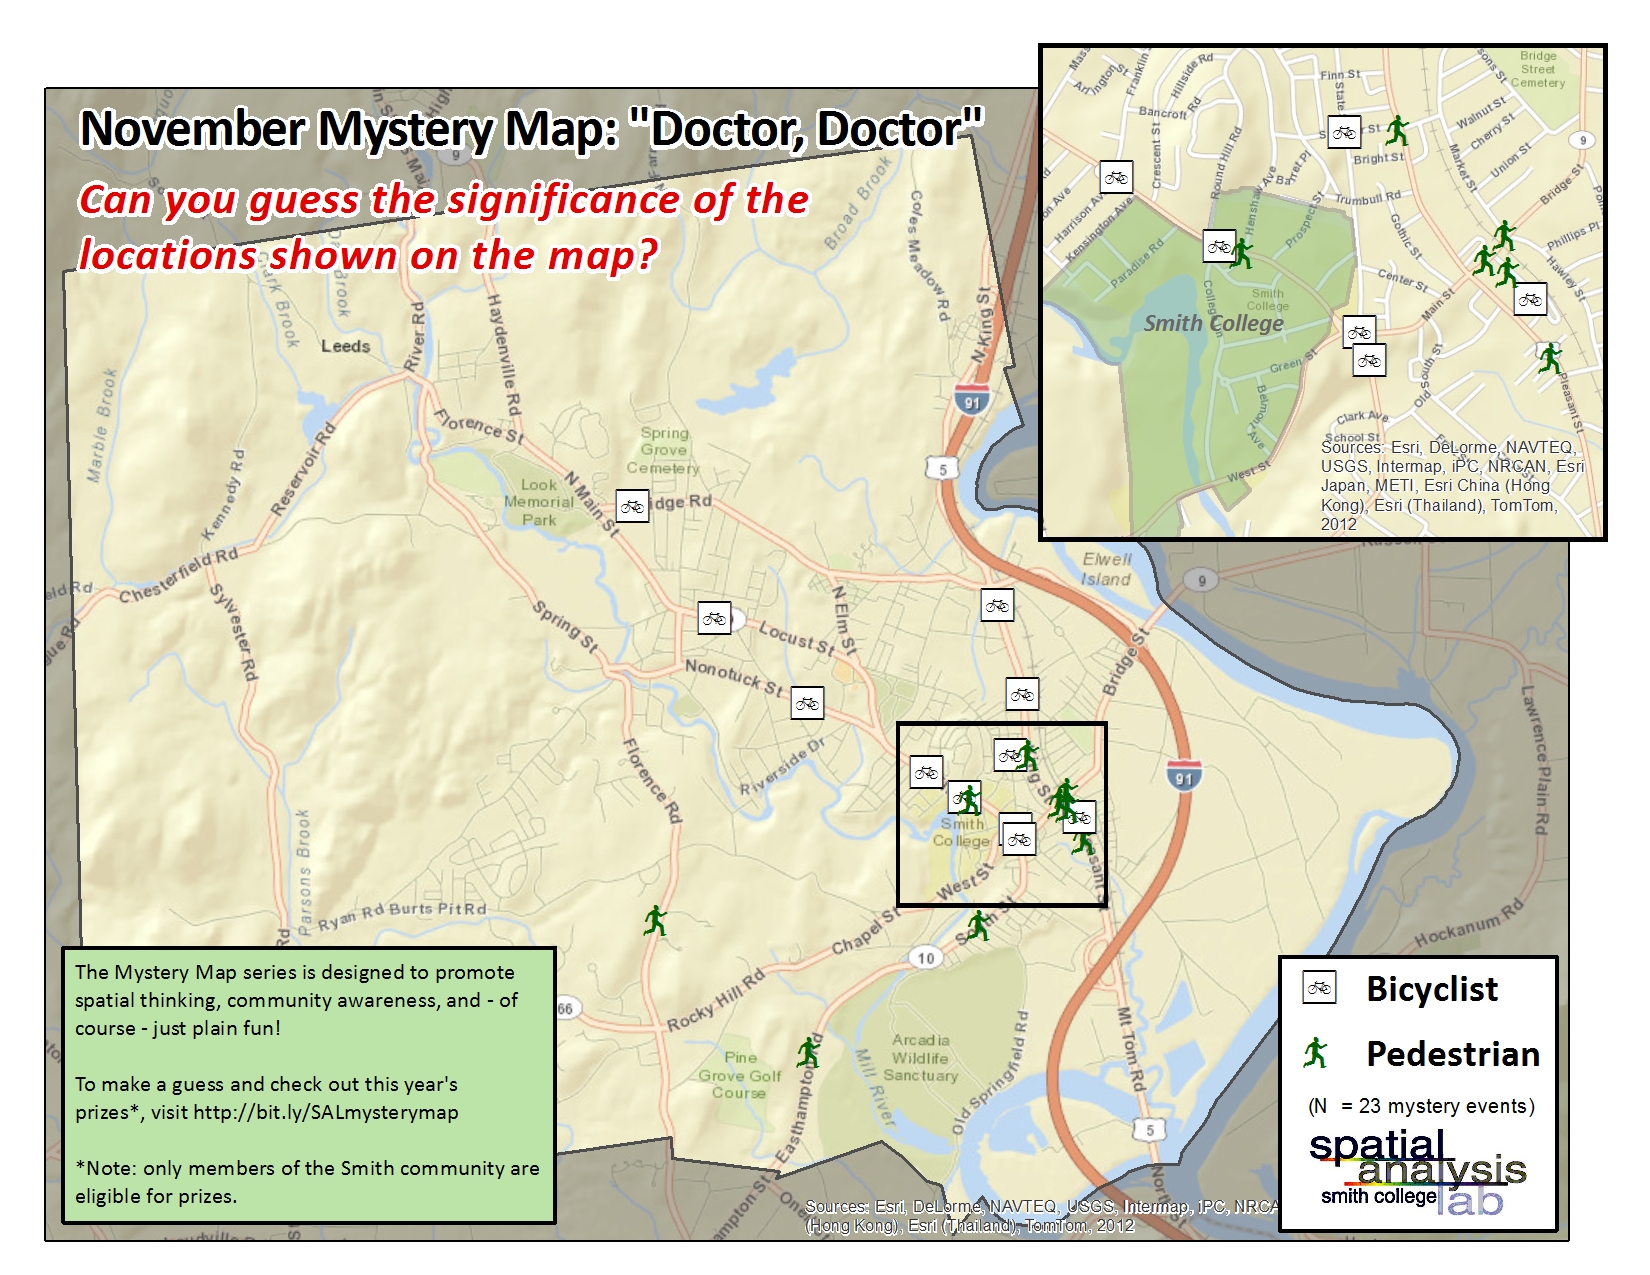 November Mystery Map Solved!